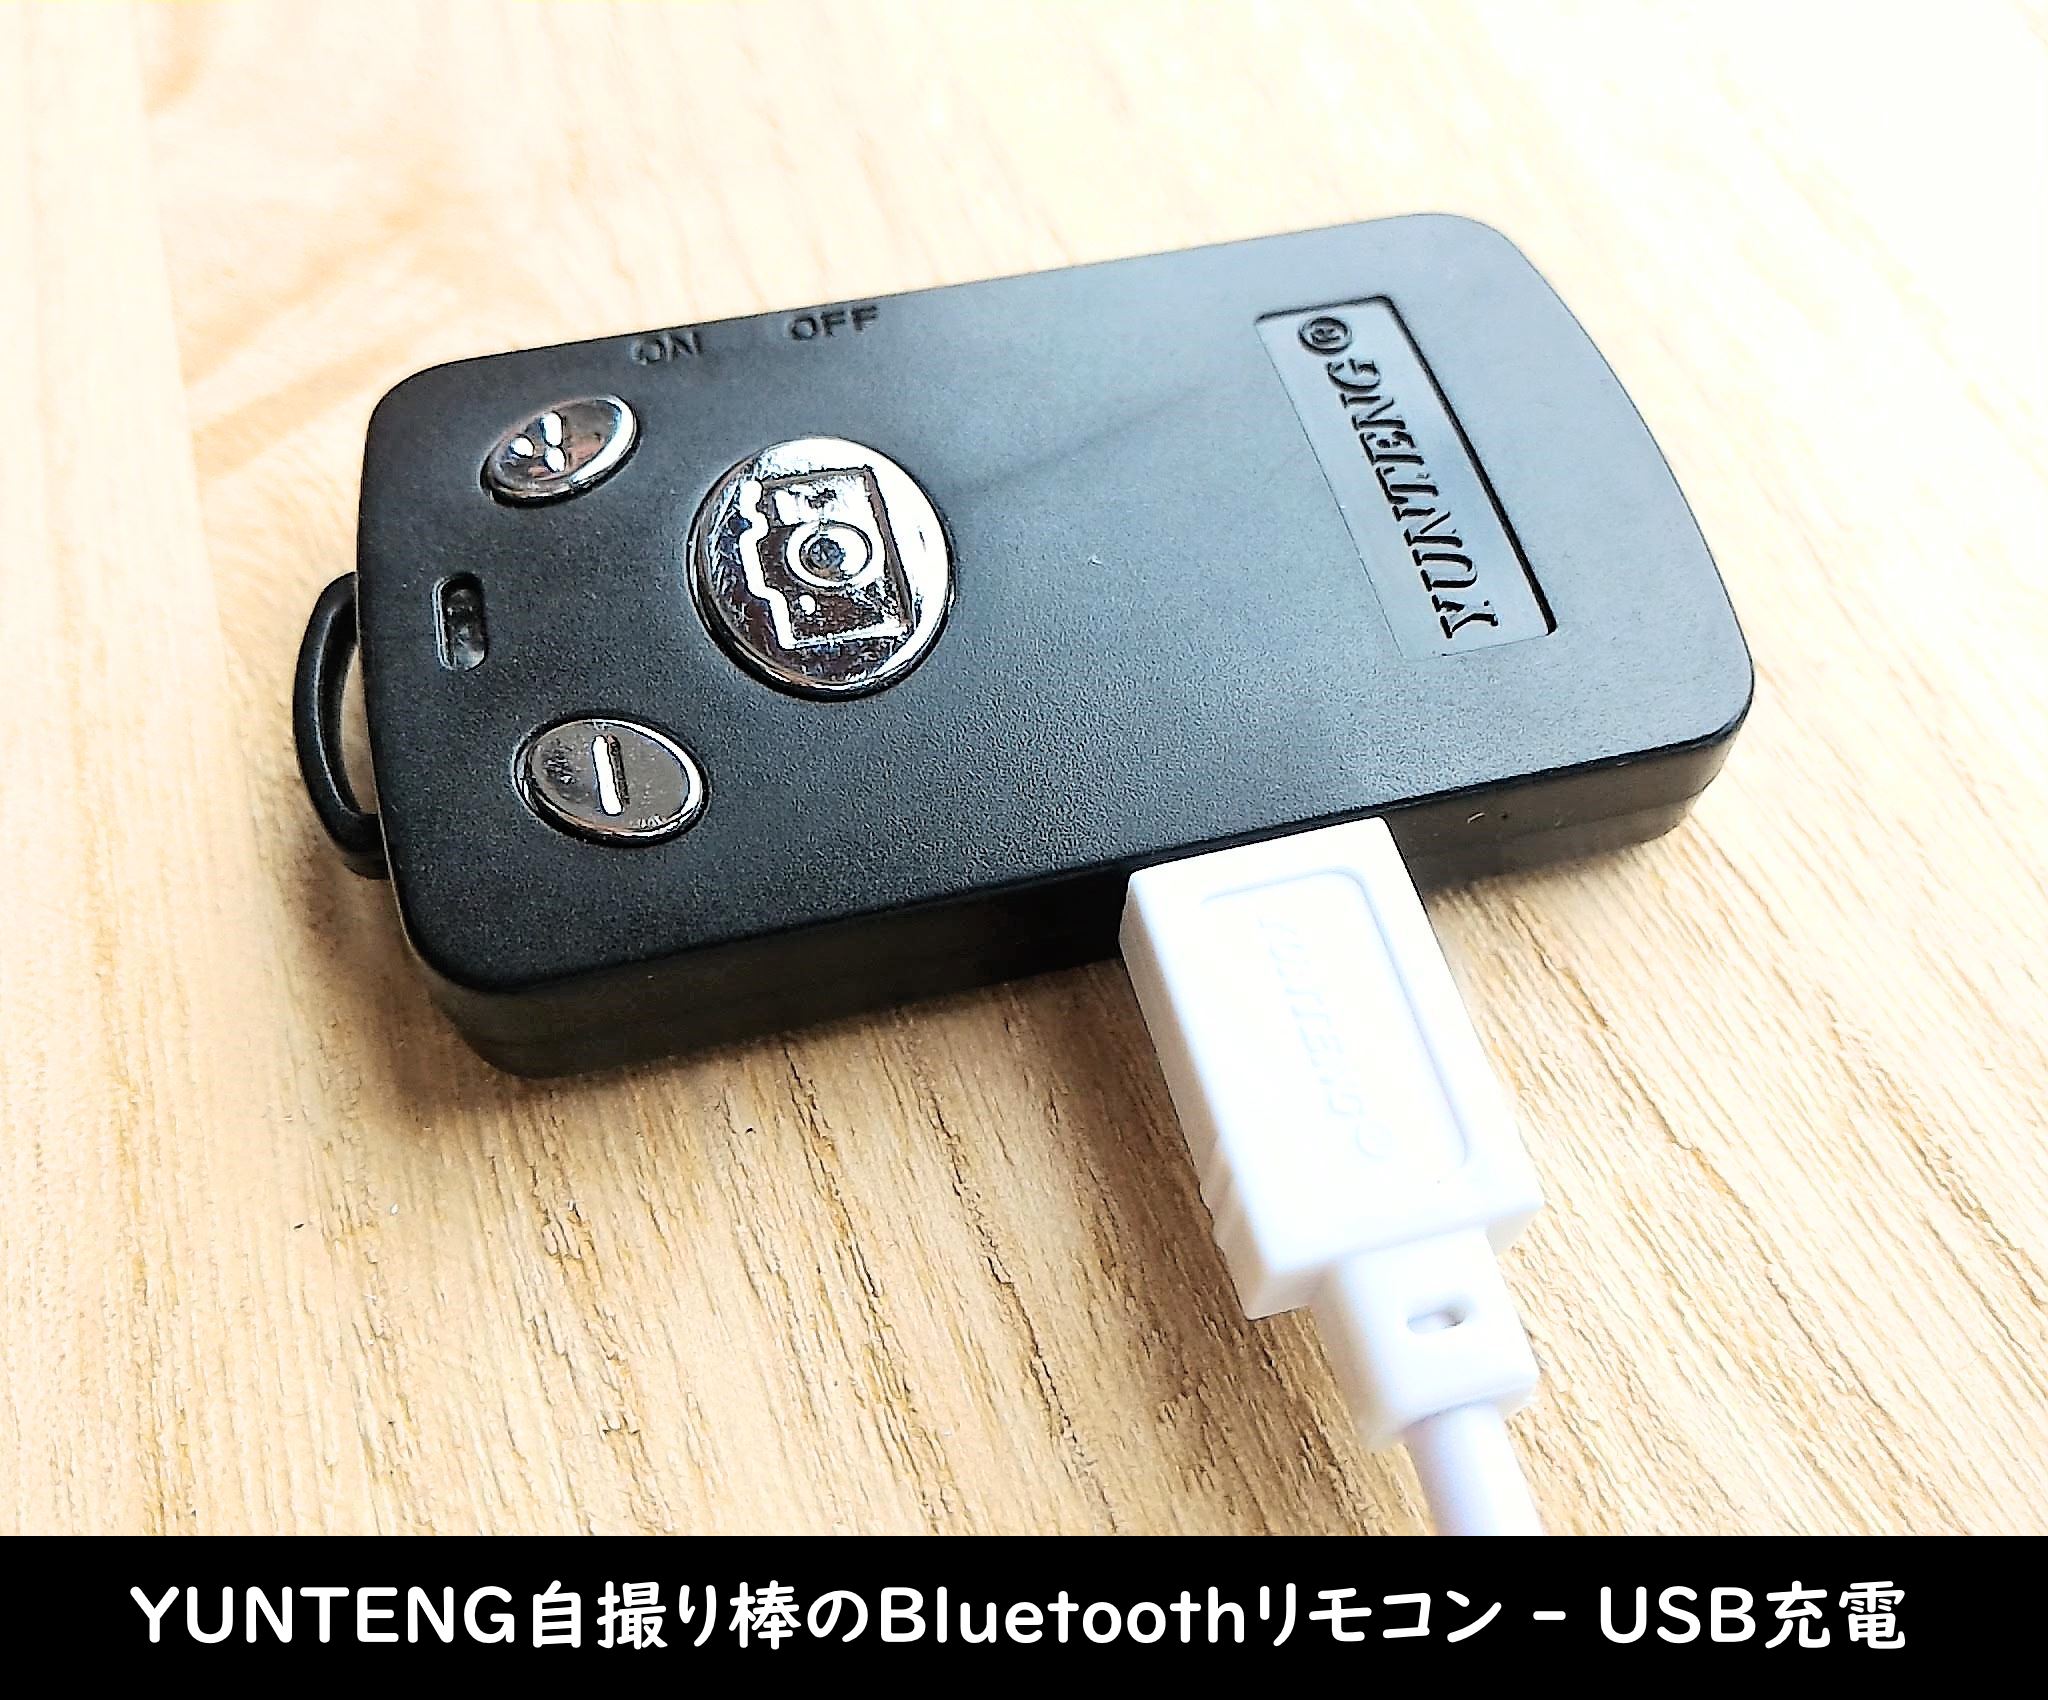 YUNTENG自撮り棒のBluetoothリモコン - USB充電